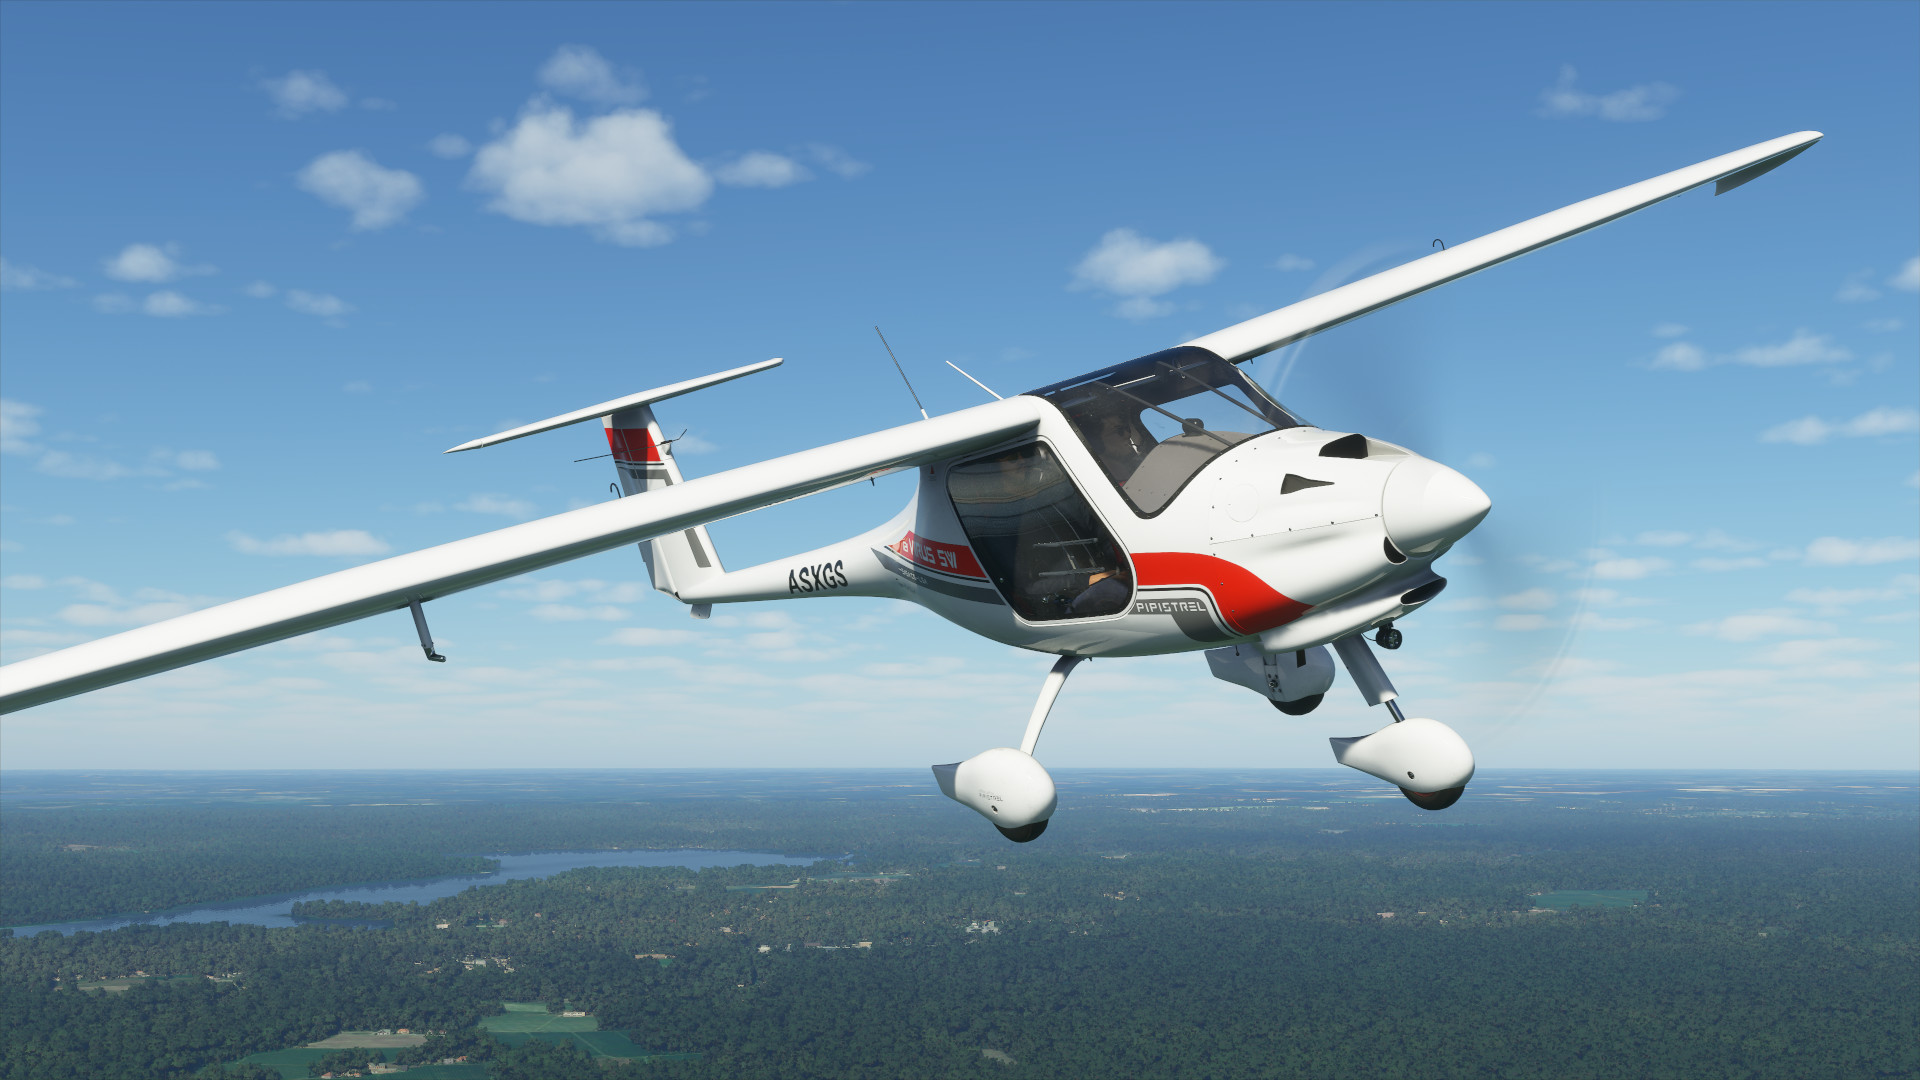 Le premier patch de Microsoft Flight Simulator arrive la semaine prochaine ; Notes préliminaires publiées